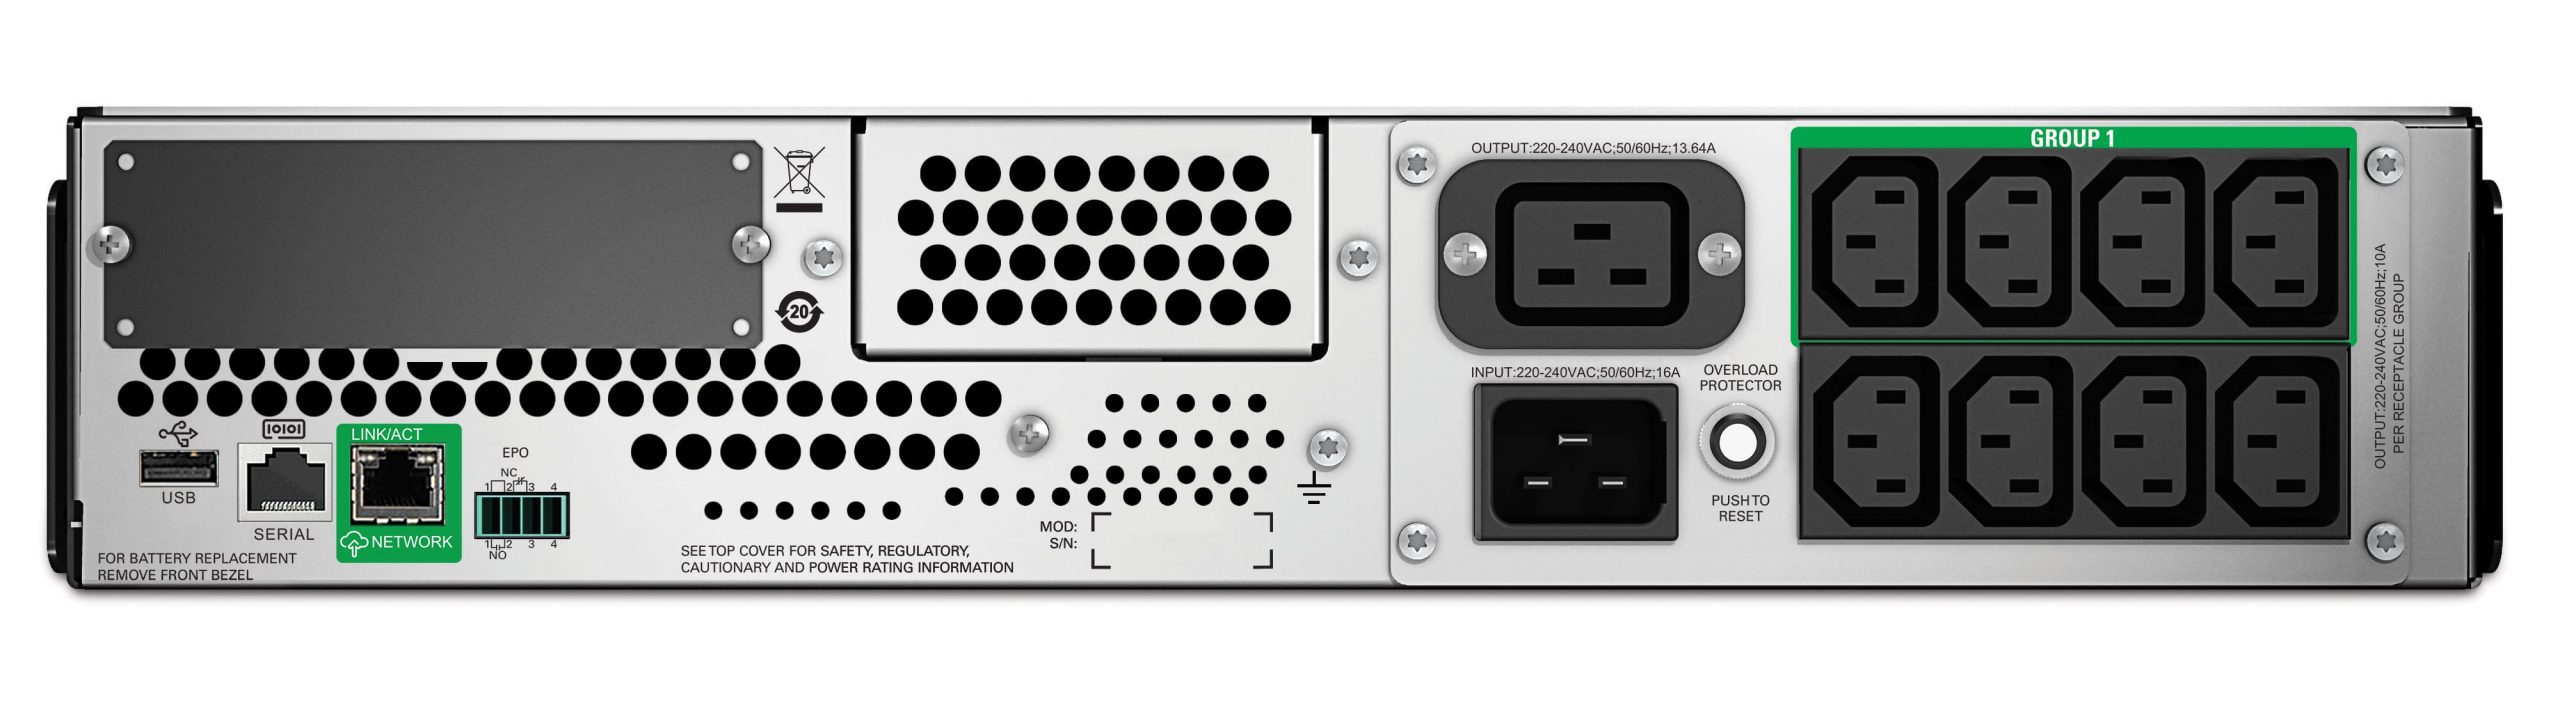 APC Smart-UPS 2200 VA, RM, 2U, 230 V Professional uninterruptible power supply Rack 2 Units